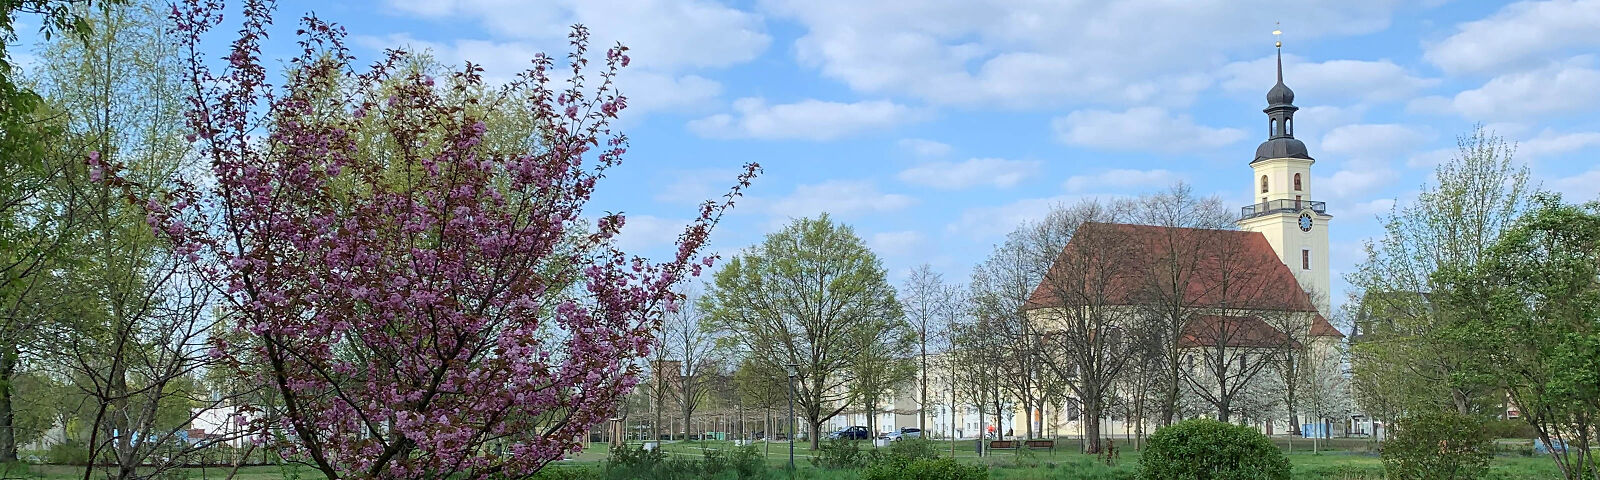 Zu sehen ist die Stadtkirche St. Nikolai im Hintergrund, davor frühlingshaftes blühendes Grün